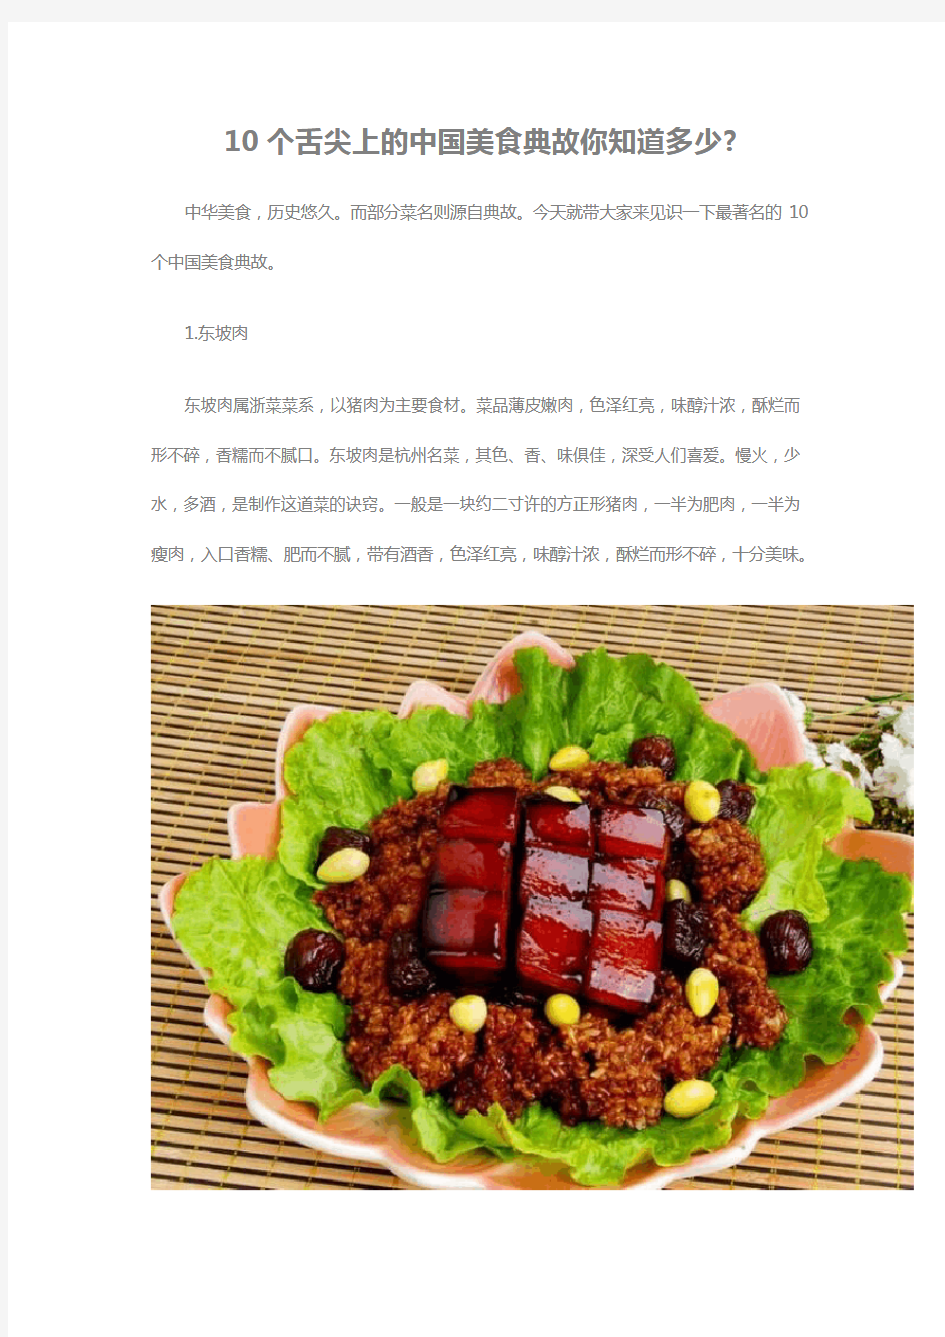 10个舌尖上的中国美食典故你知道多少